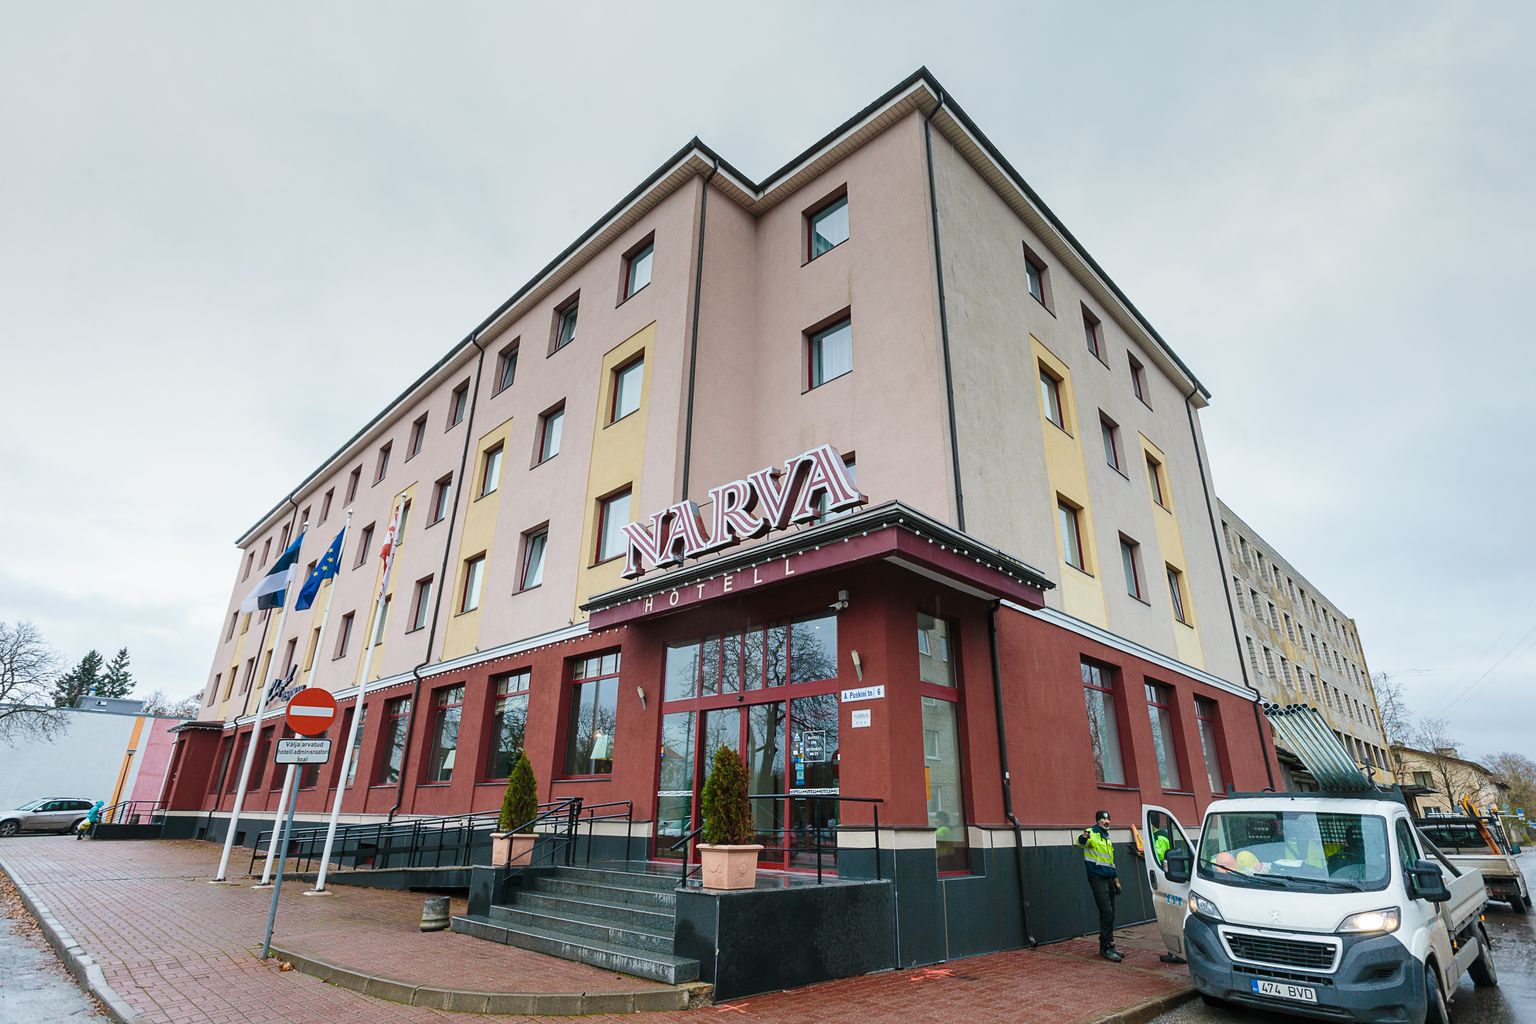 Отель "Narva" расширится на подвальный этаж, где появится банно-релаксационный центр.